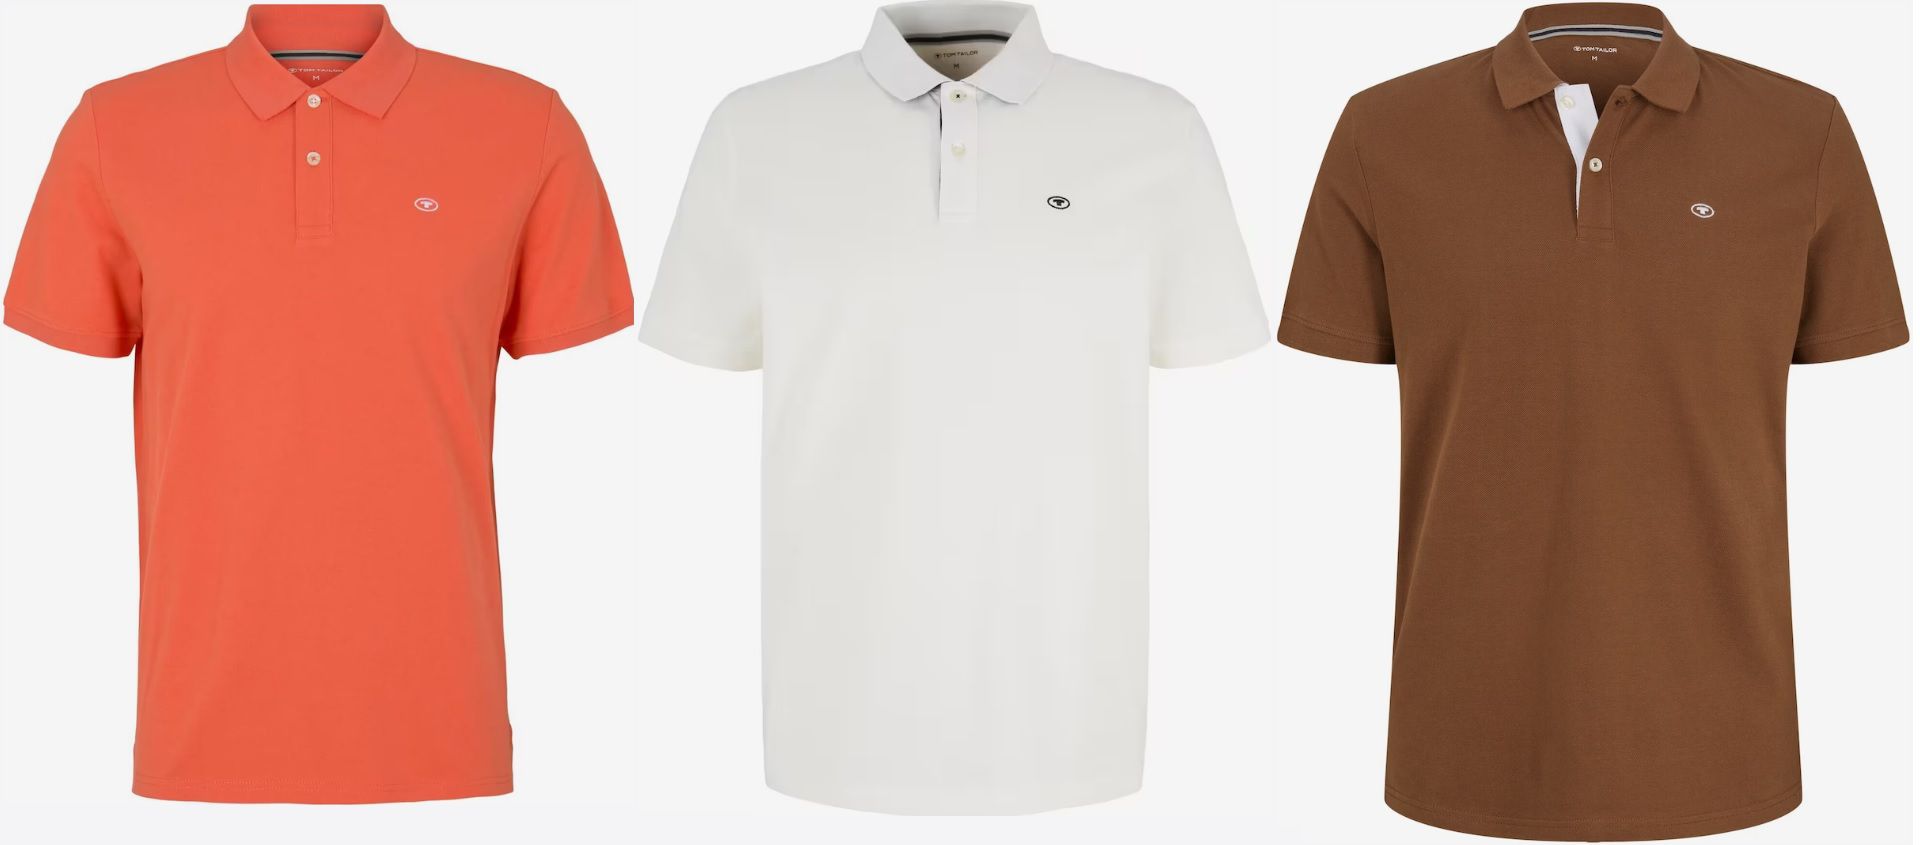 Tom Tailor Poloshirts in verschiedenen Farben ab 11,94€ (statt 19€)